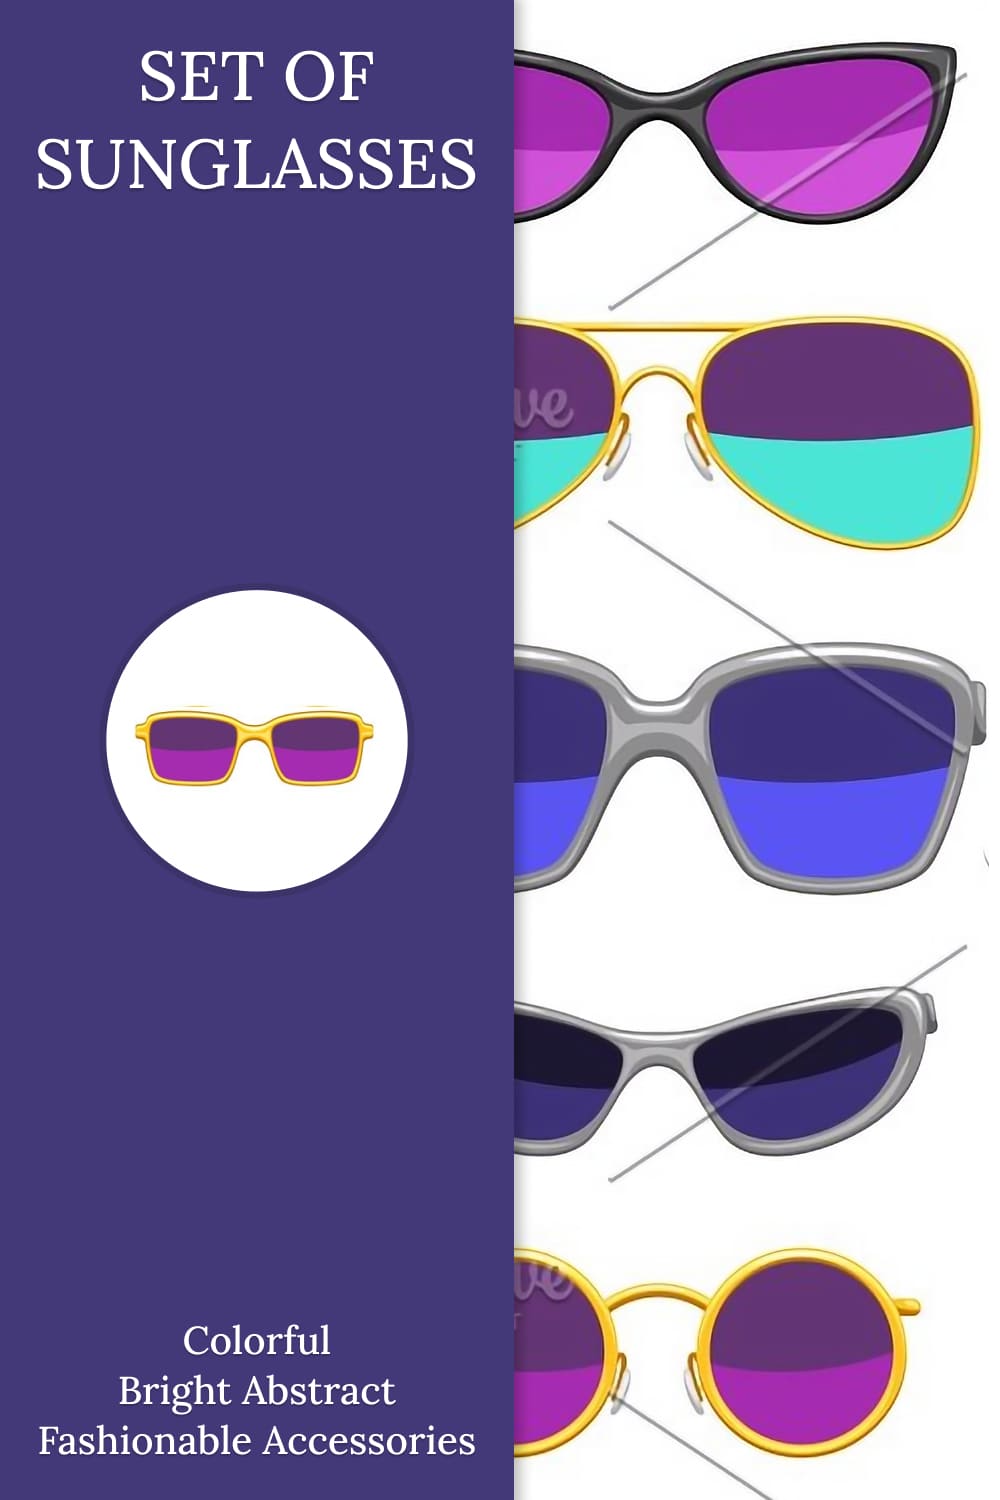 Set of stylish sunglasses pinterest image.